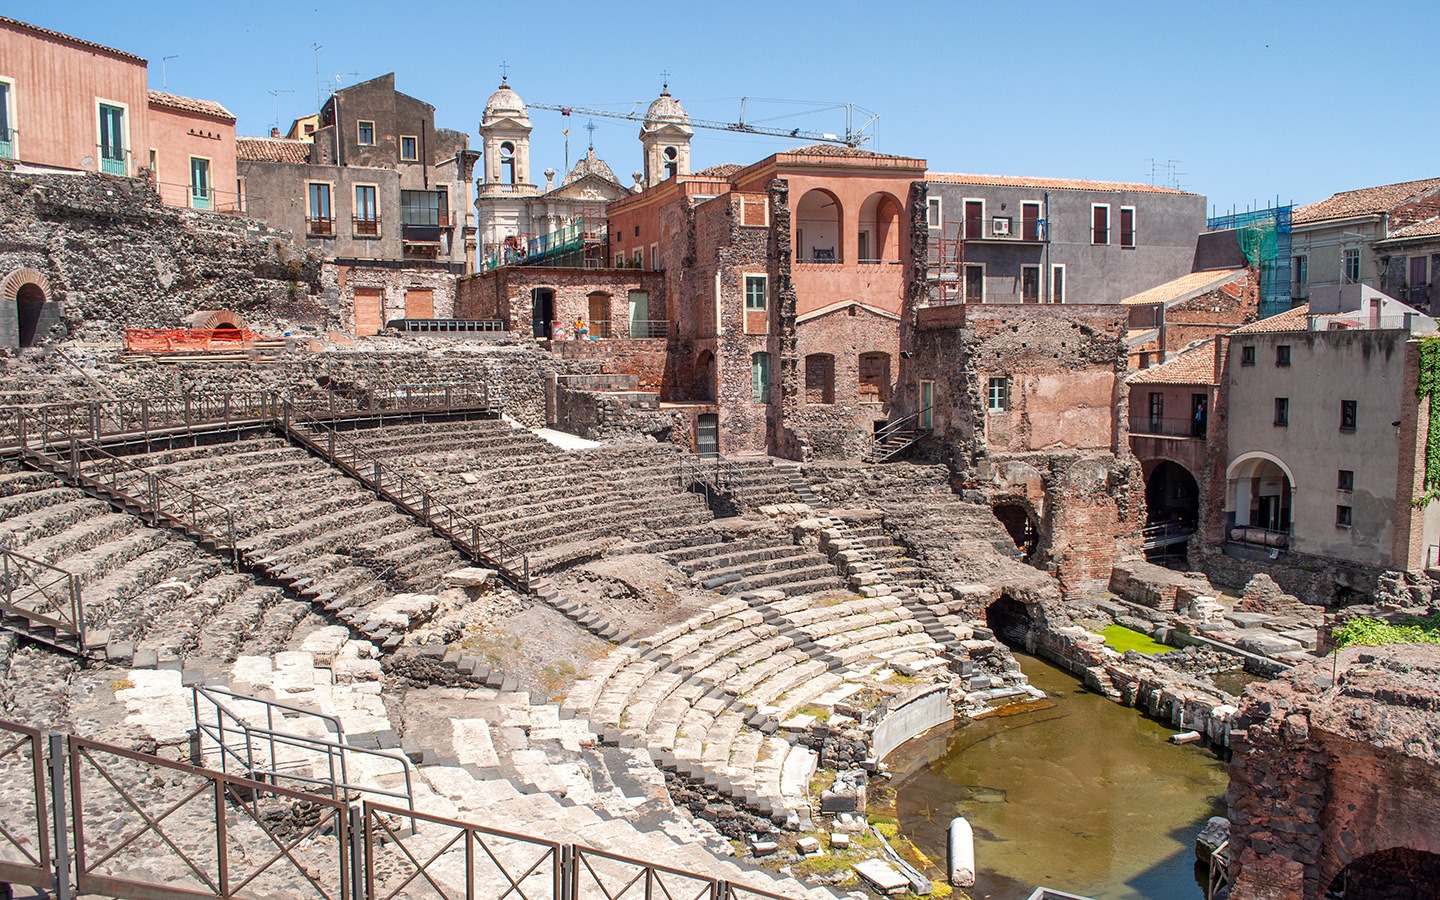 Roman amphitheatre in Catania, Sicily